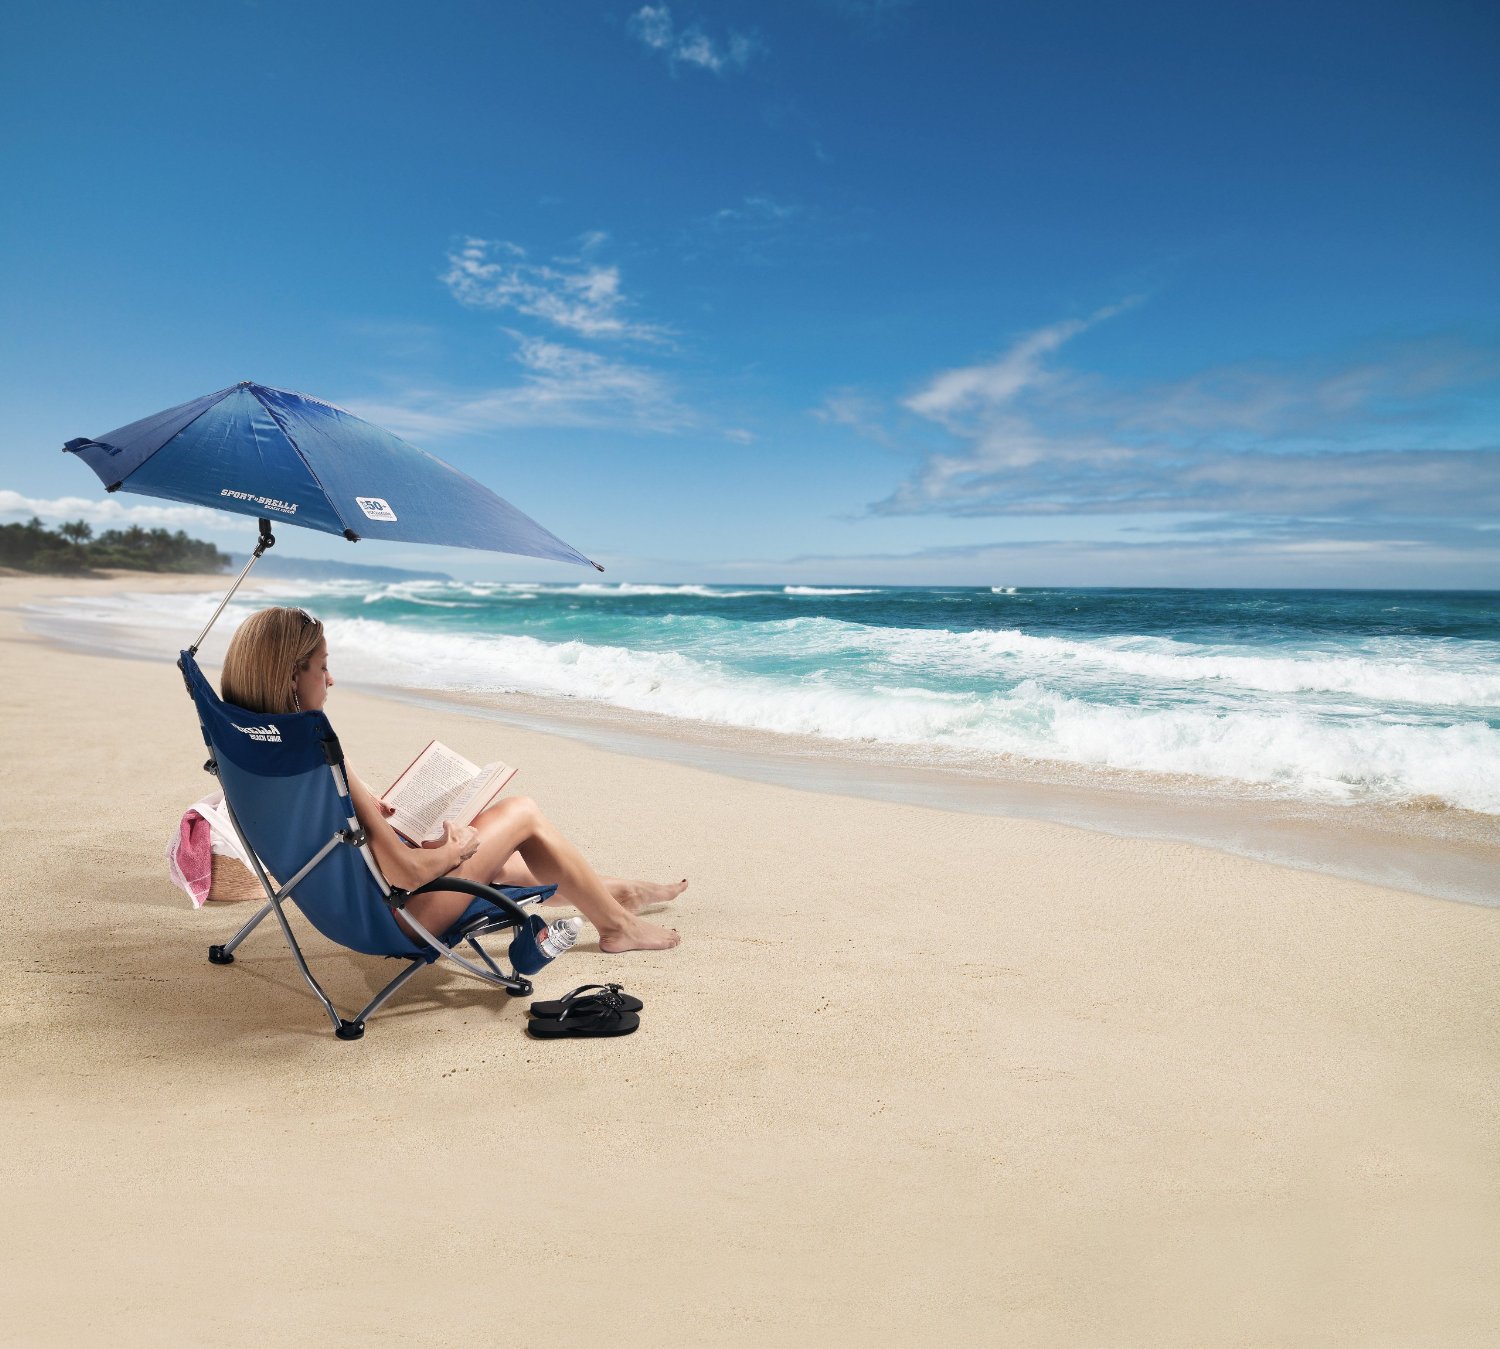 Sport-Brella Beach Chair - Portable Umbrella Chair  